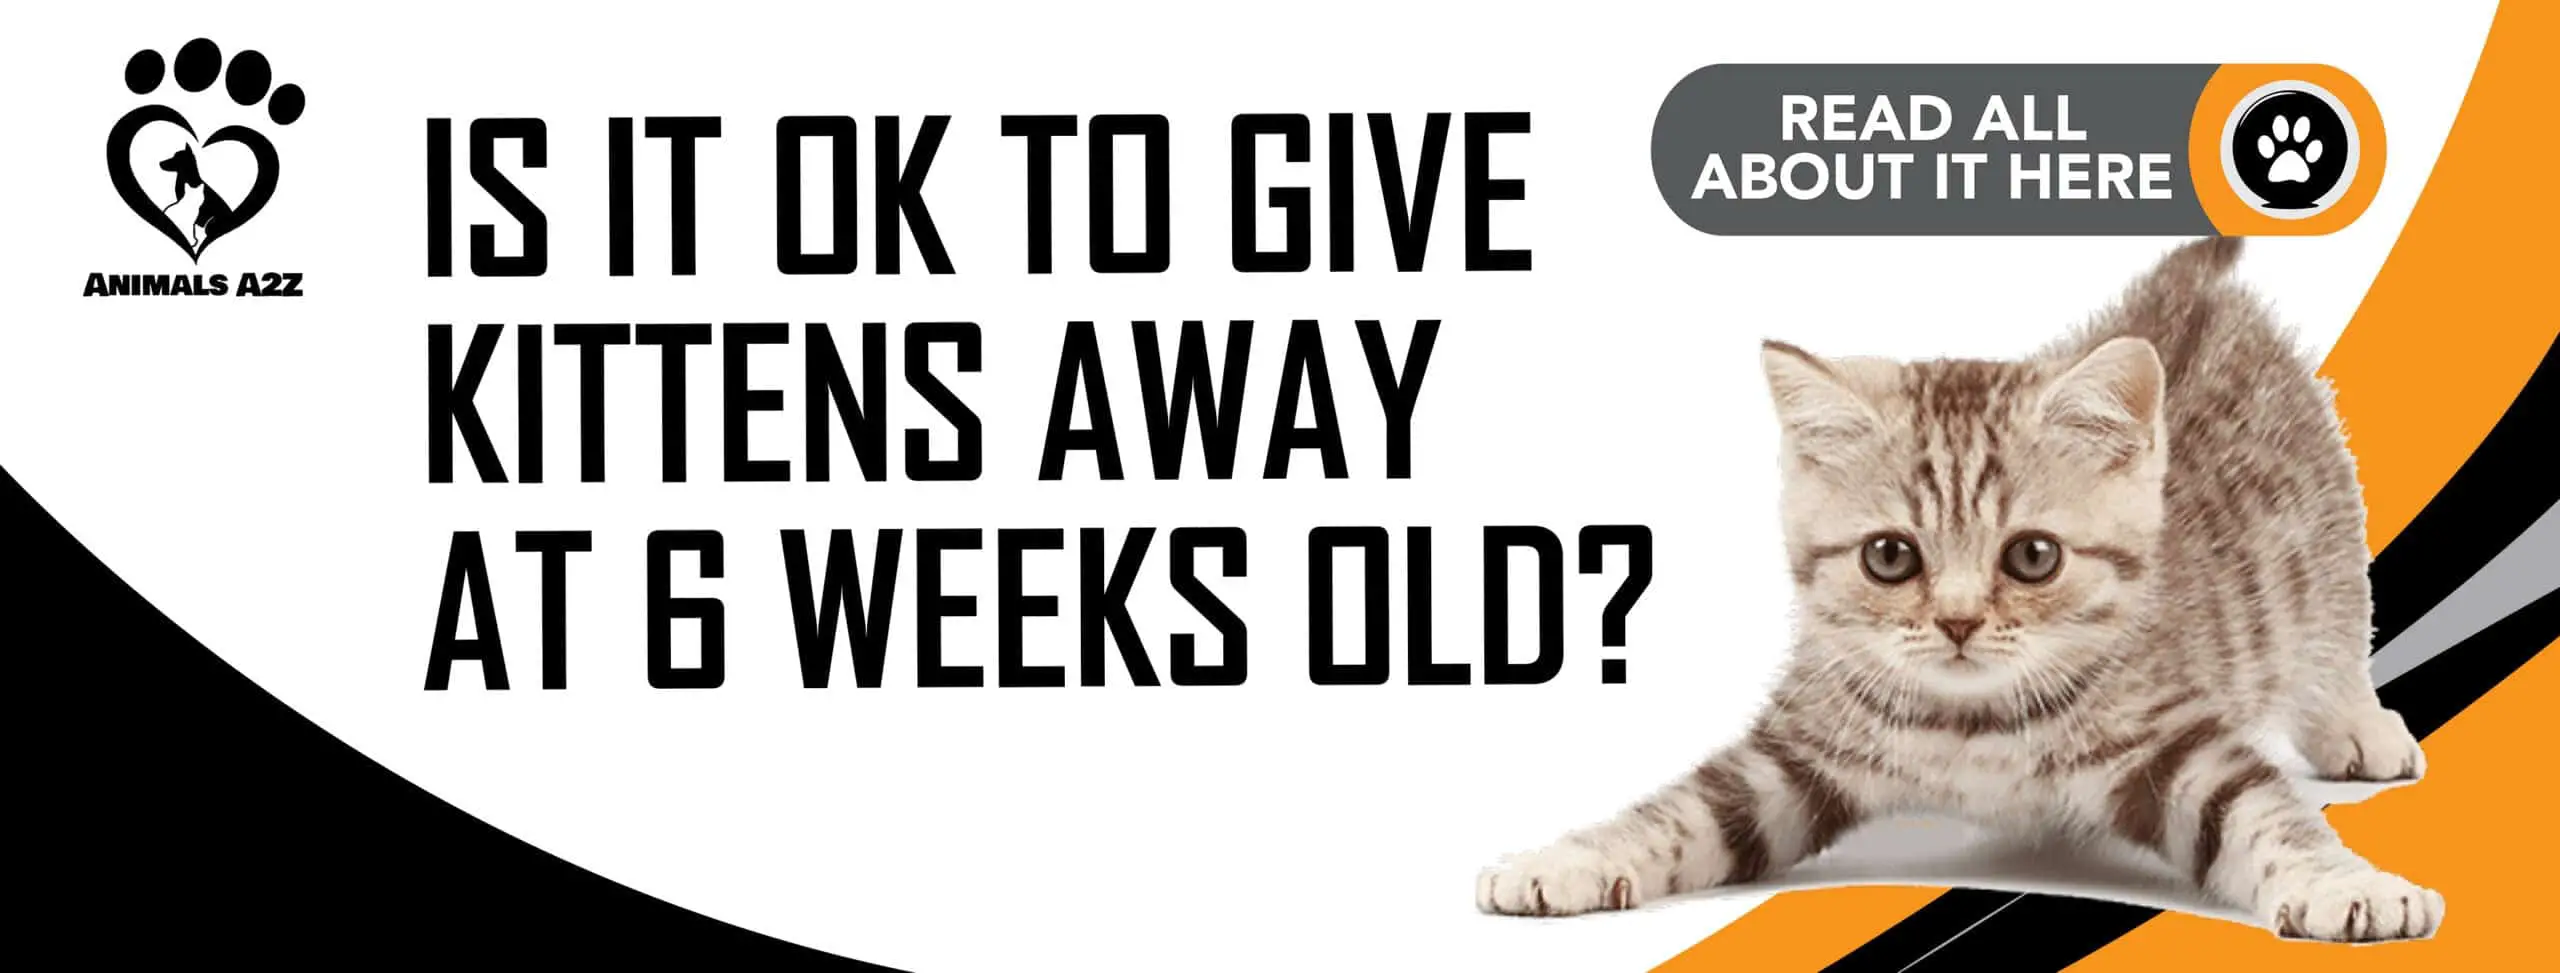 Er det i orden at give killinger væk, når de er 6 uger gamle?